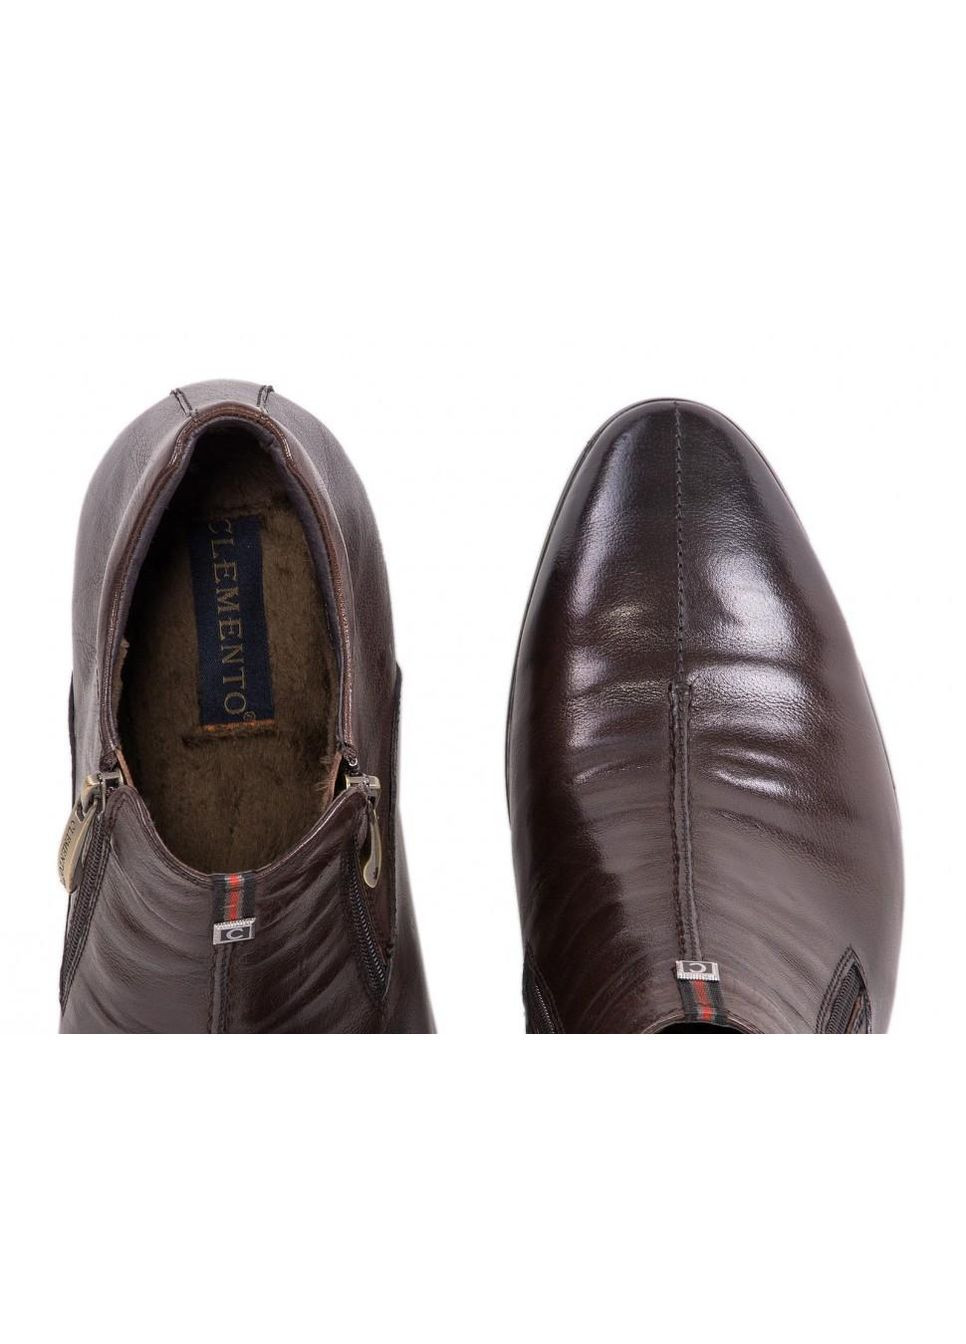 Коричневые зимние ботинки 7154632-б 38 цвет коричневый Clemento